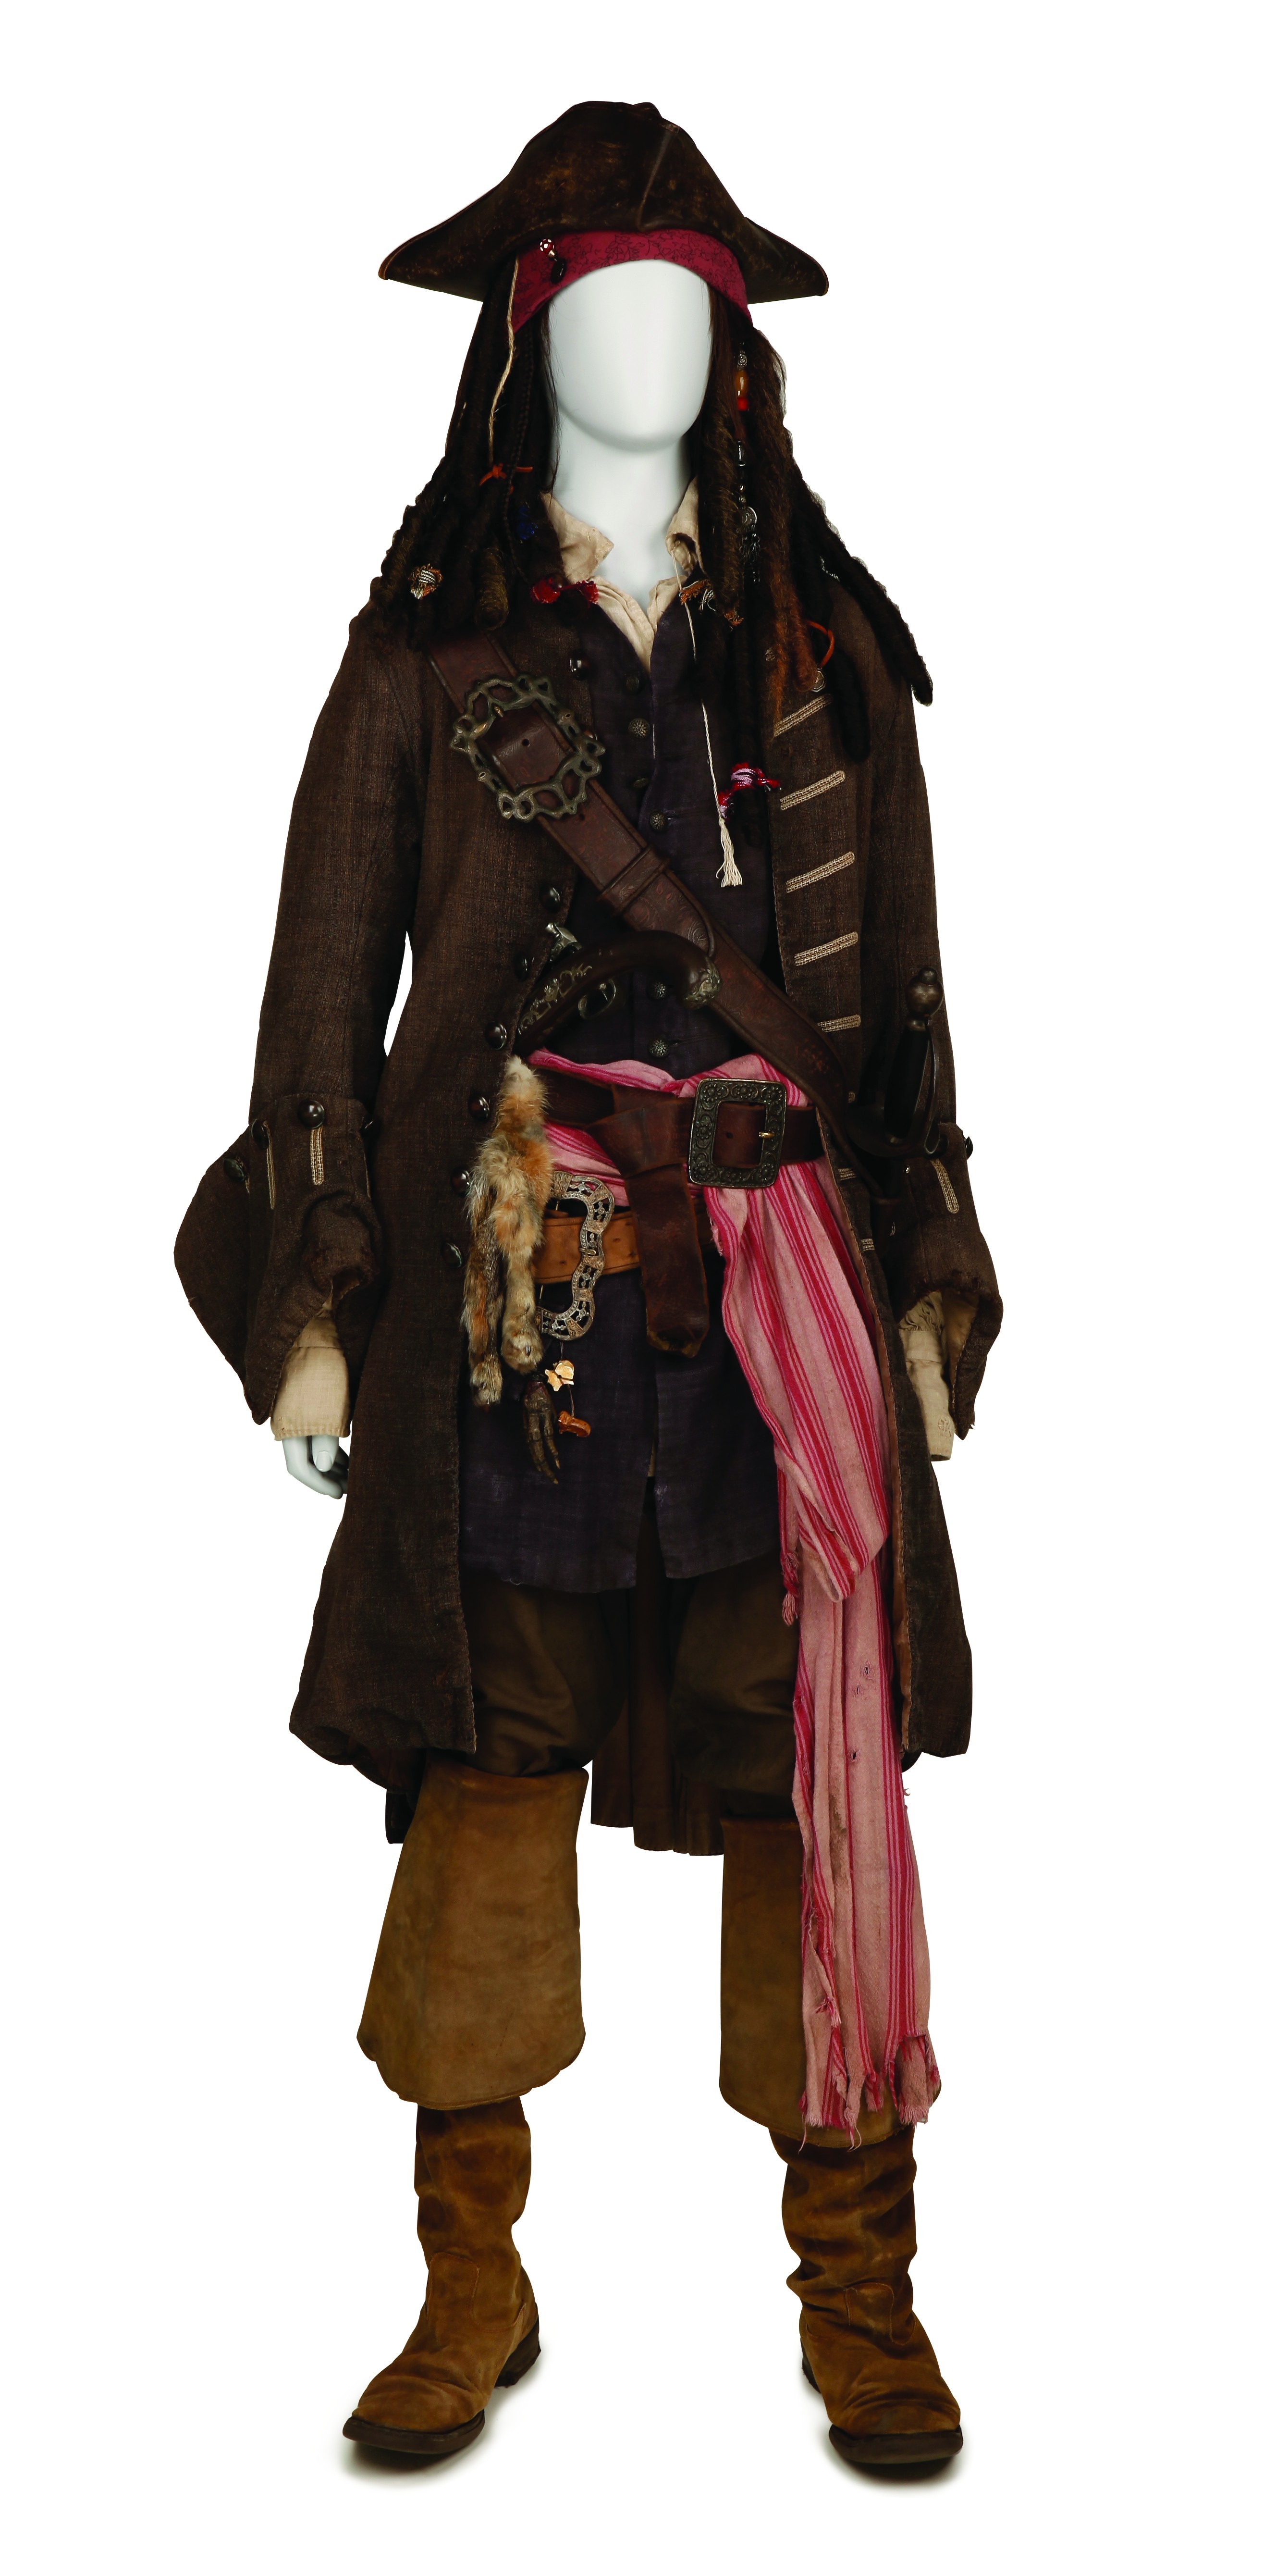  『パイレーツ・オブ・カリビアン／最後の海賊』 ジョニー・デップのアイディアが詰まった衣裳と小道具